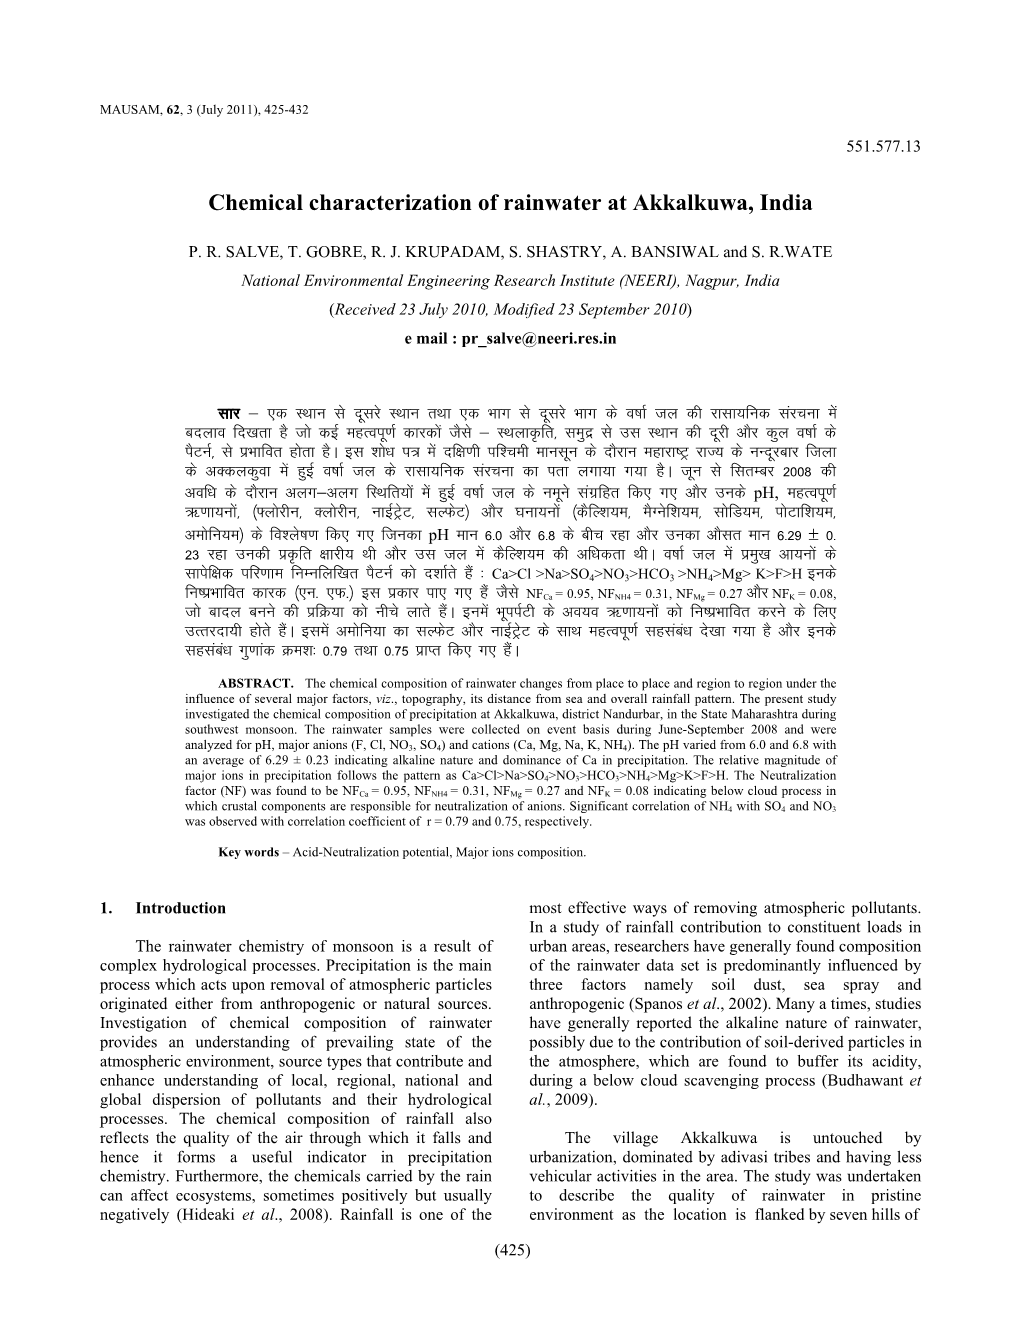 Chemical Characterization of Rainwater at Akkalkuwa, India